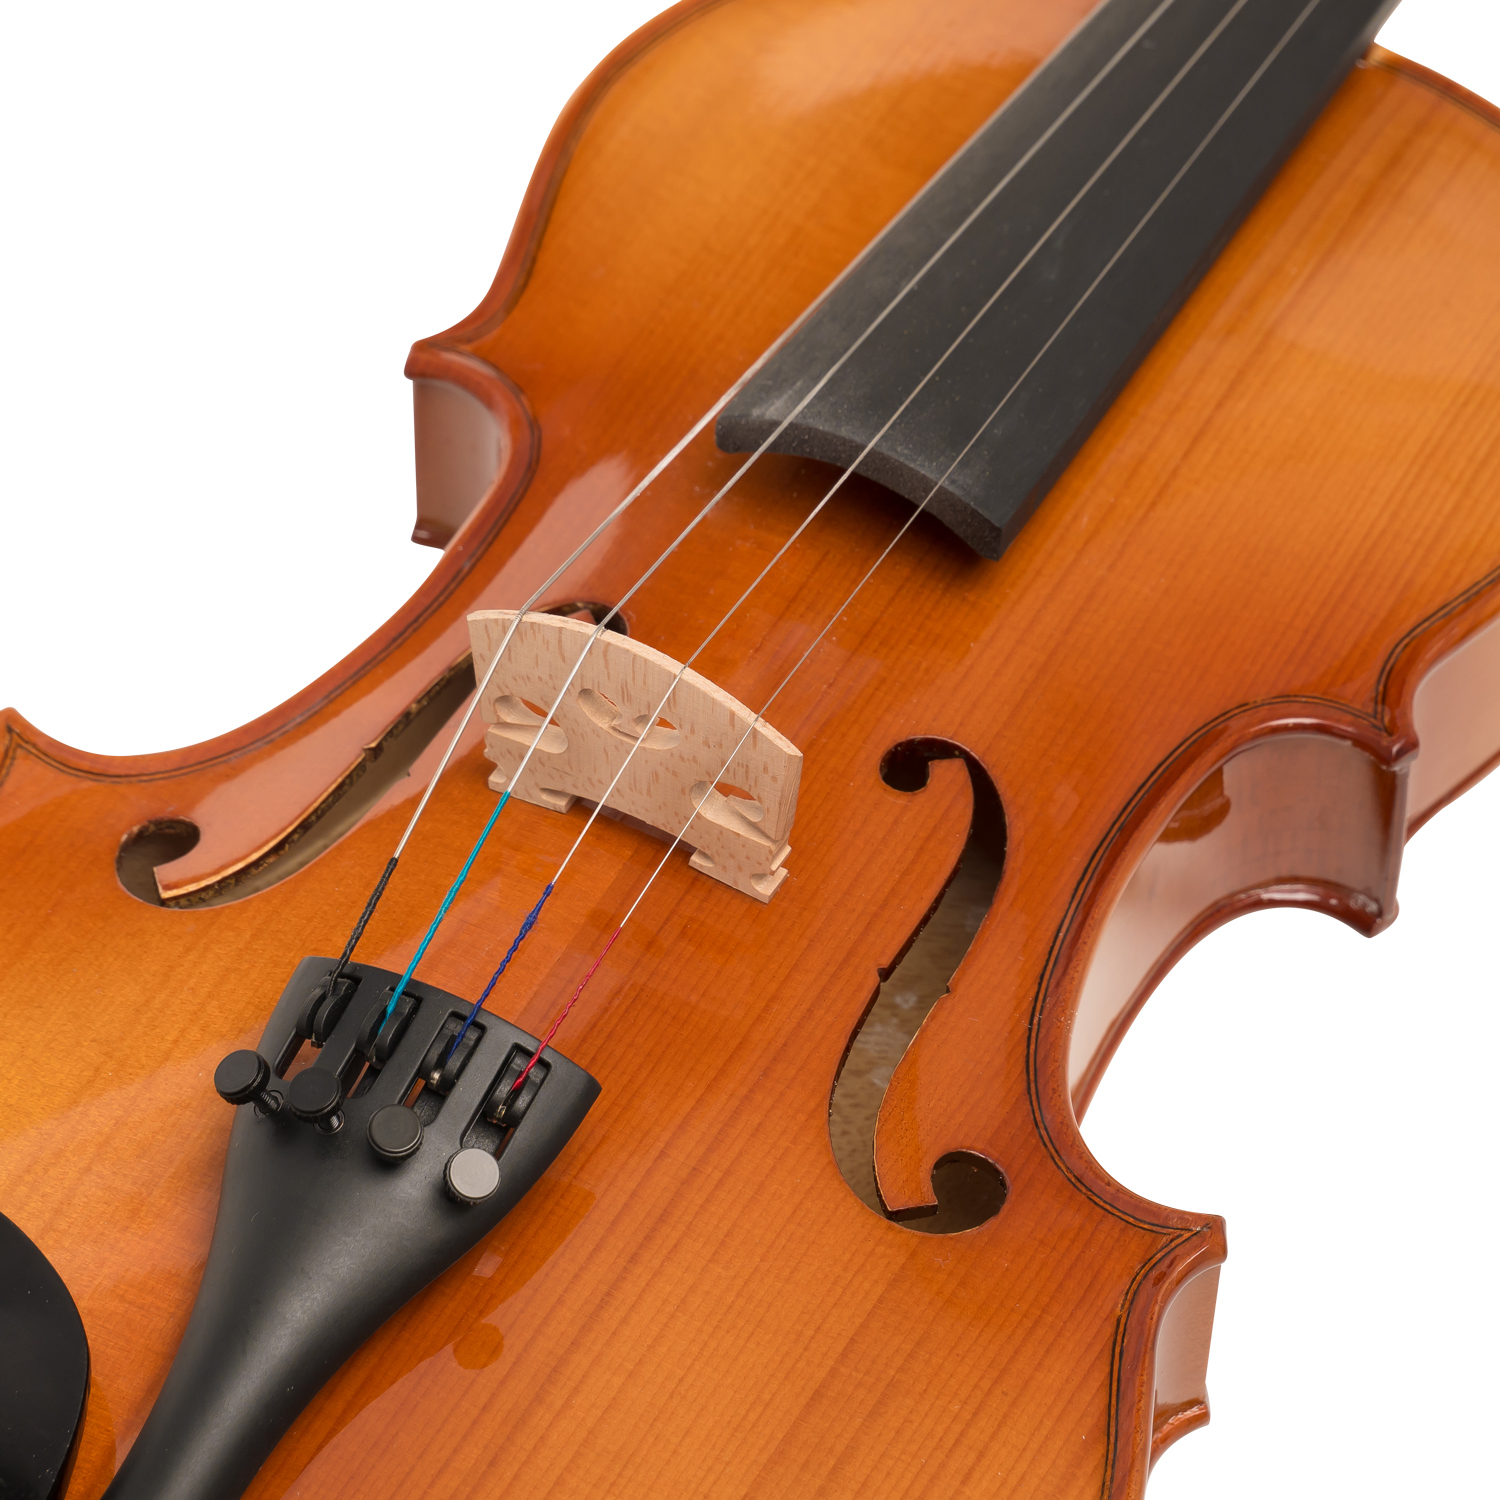 Bow Music Stand & Shoulder Rest VIOLINSK44 2xRosin 2X Bridge includes Case Windsor 4 Violin Super Kit Digital tuner spare Strings 